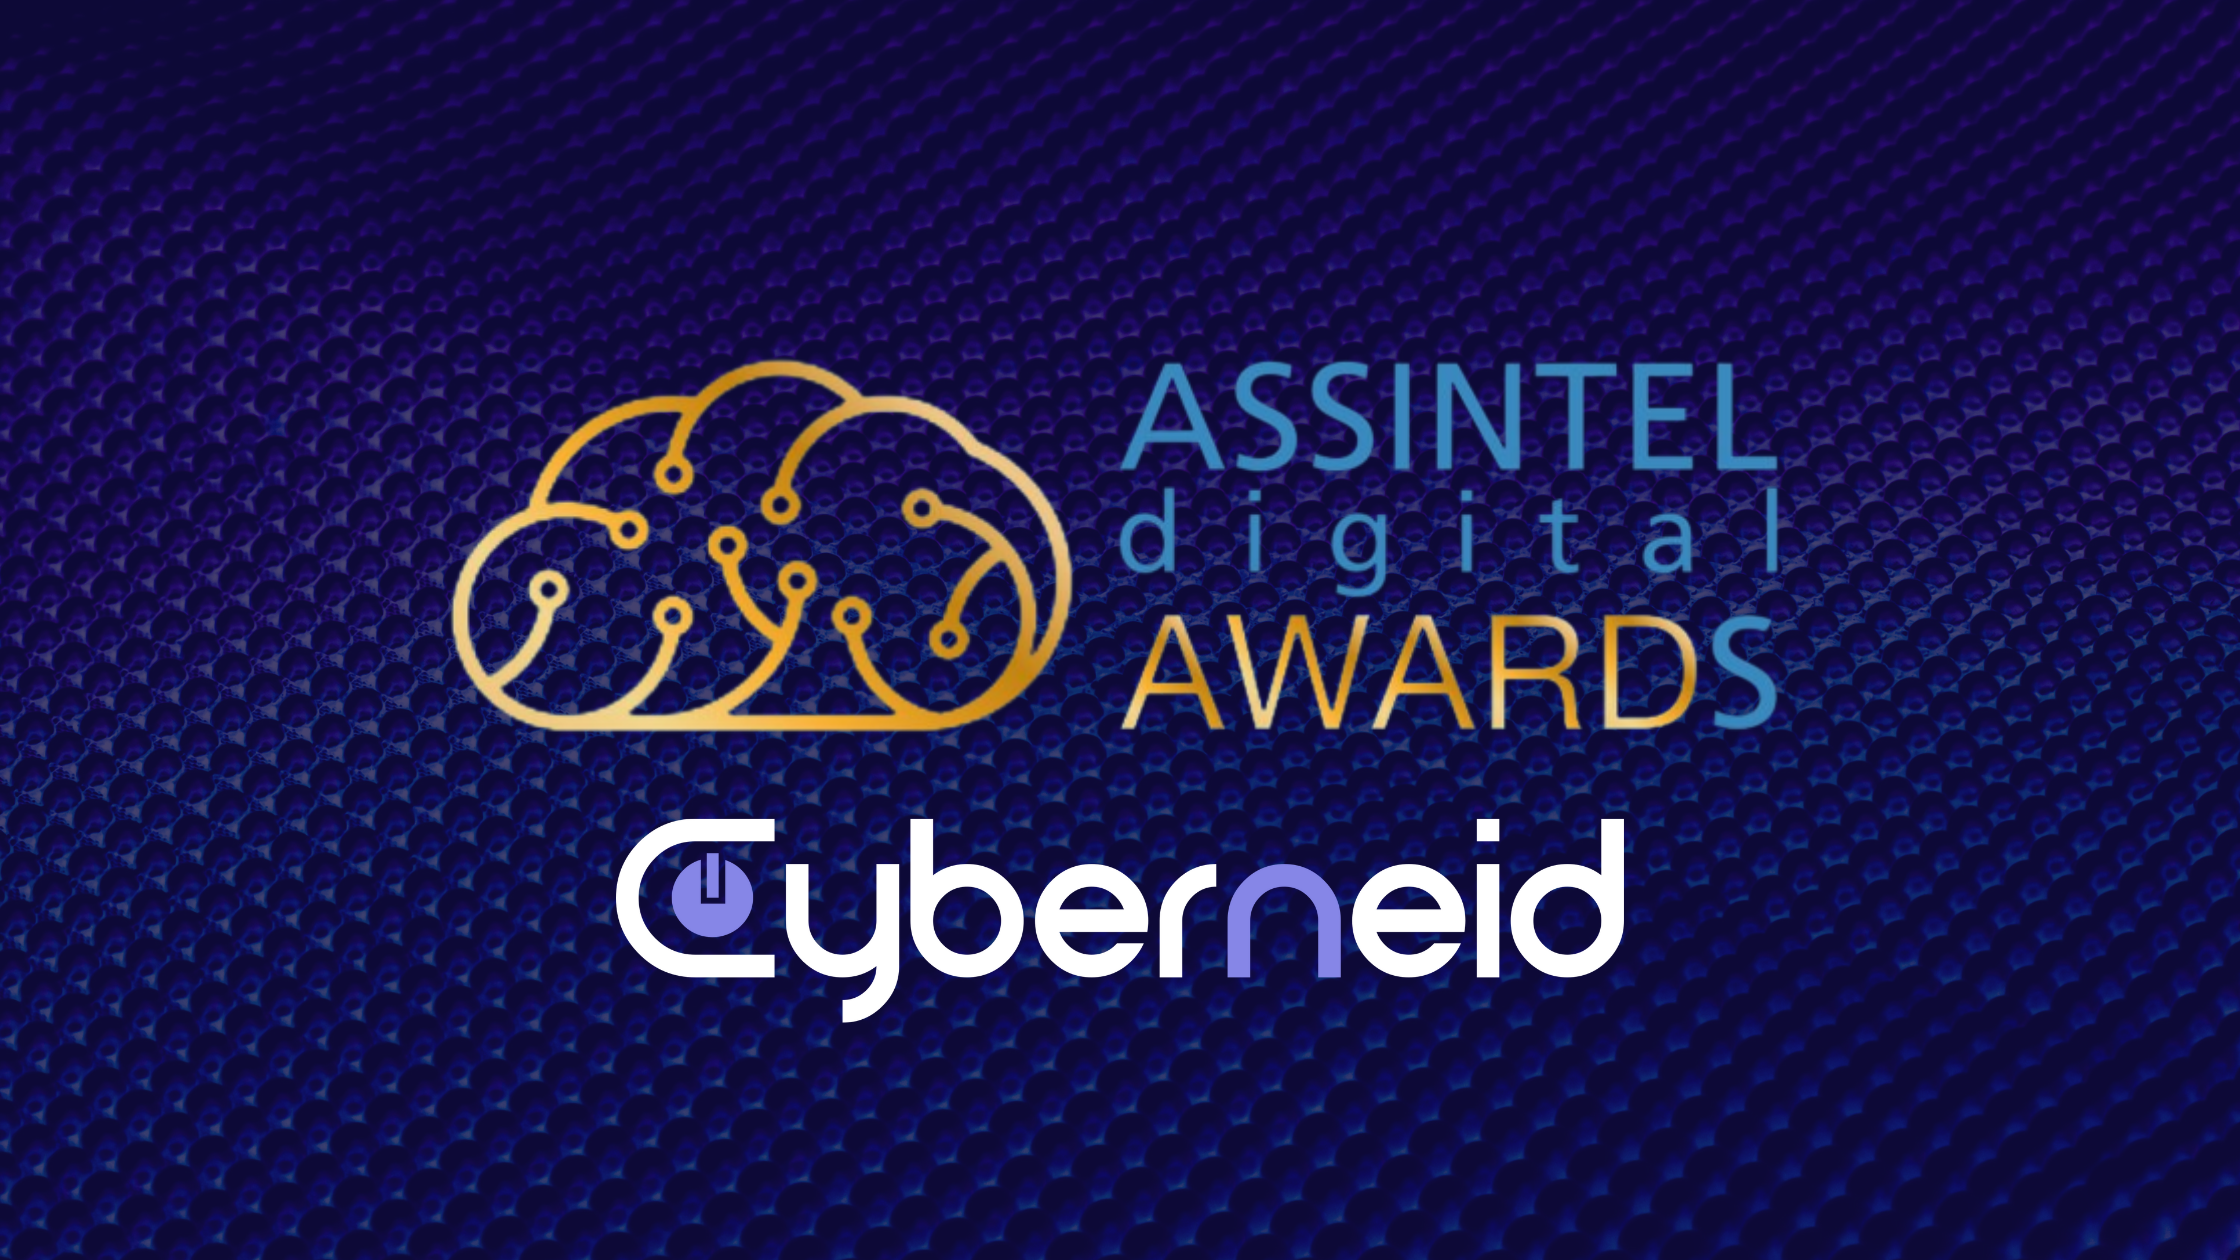 Dall'alto verso il basso: Assintel digital awards, Cyberneid. Immagine sui toni del blu con texture metallica in trasparenza.